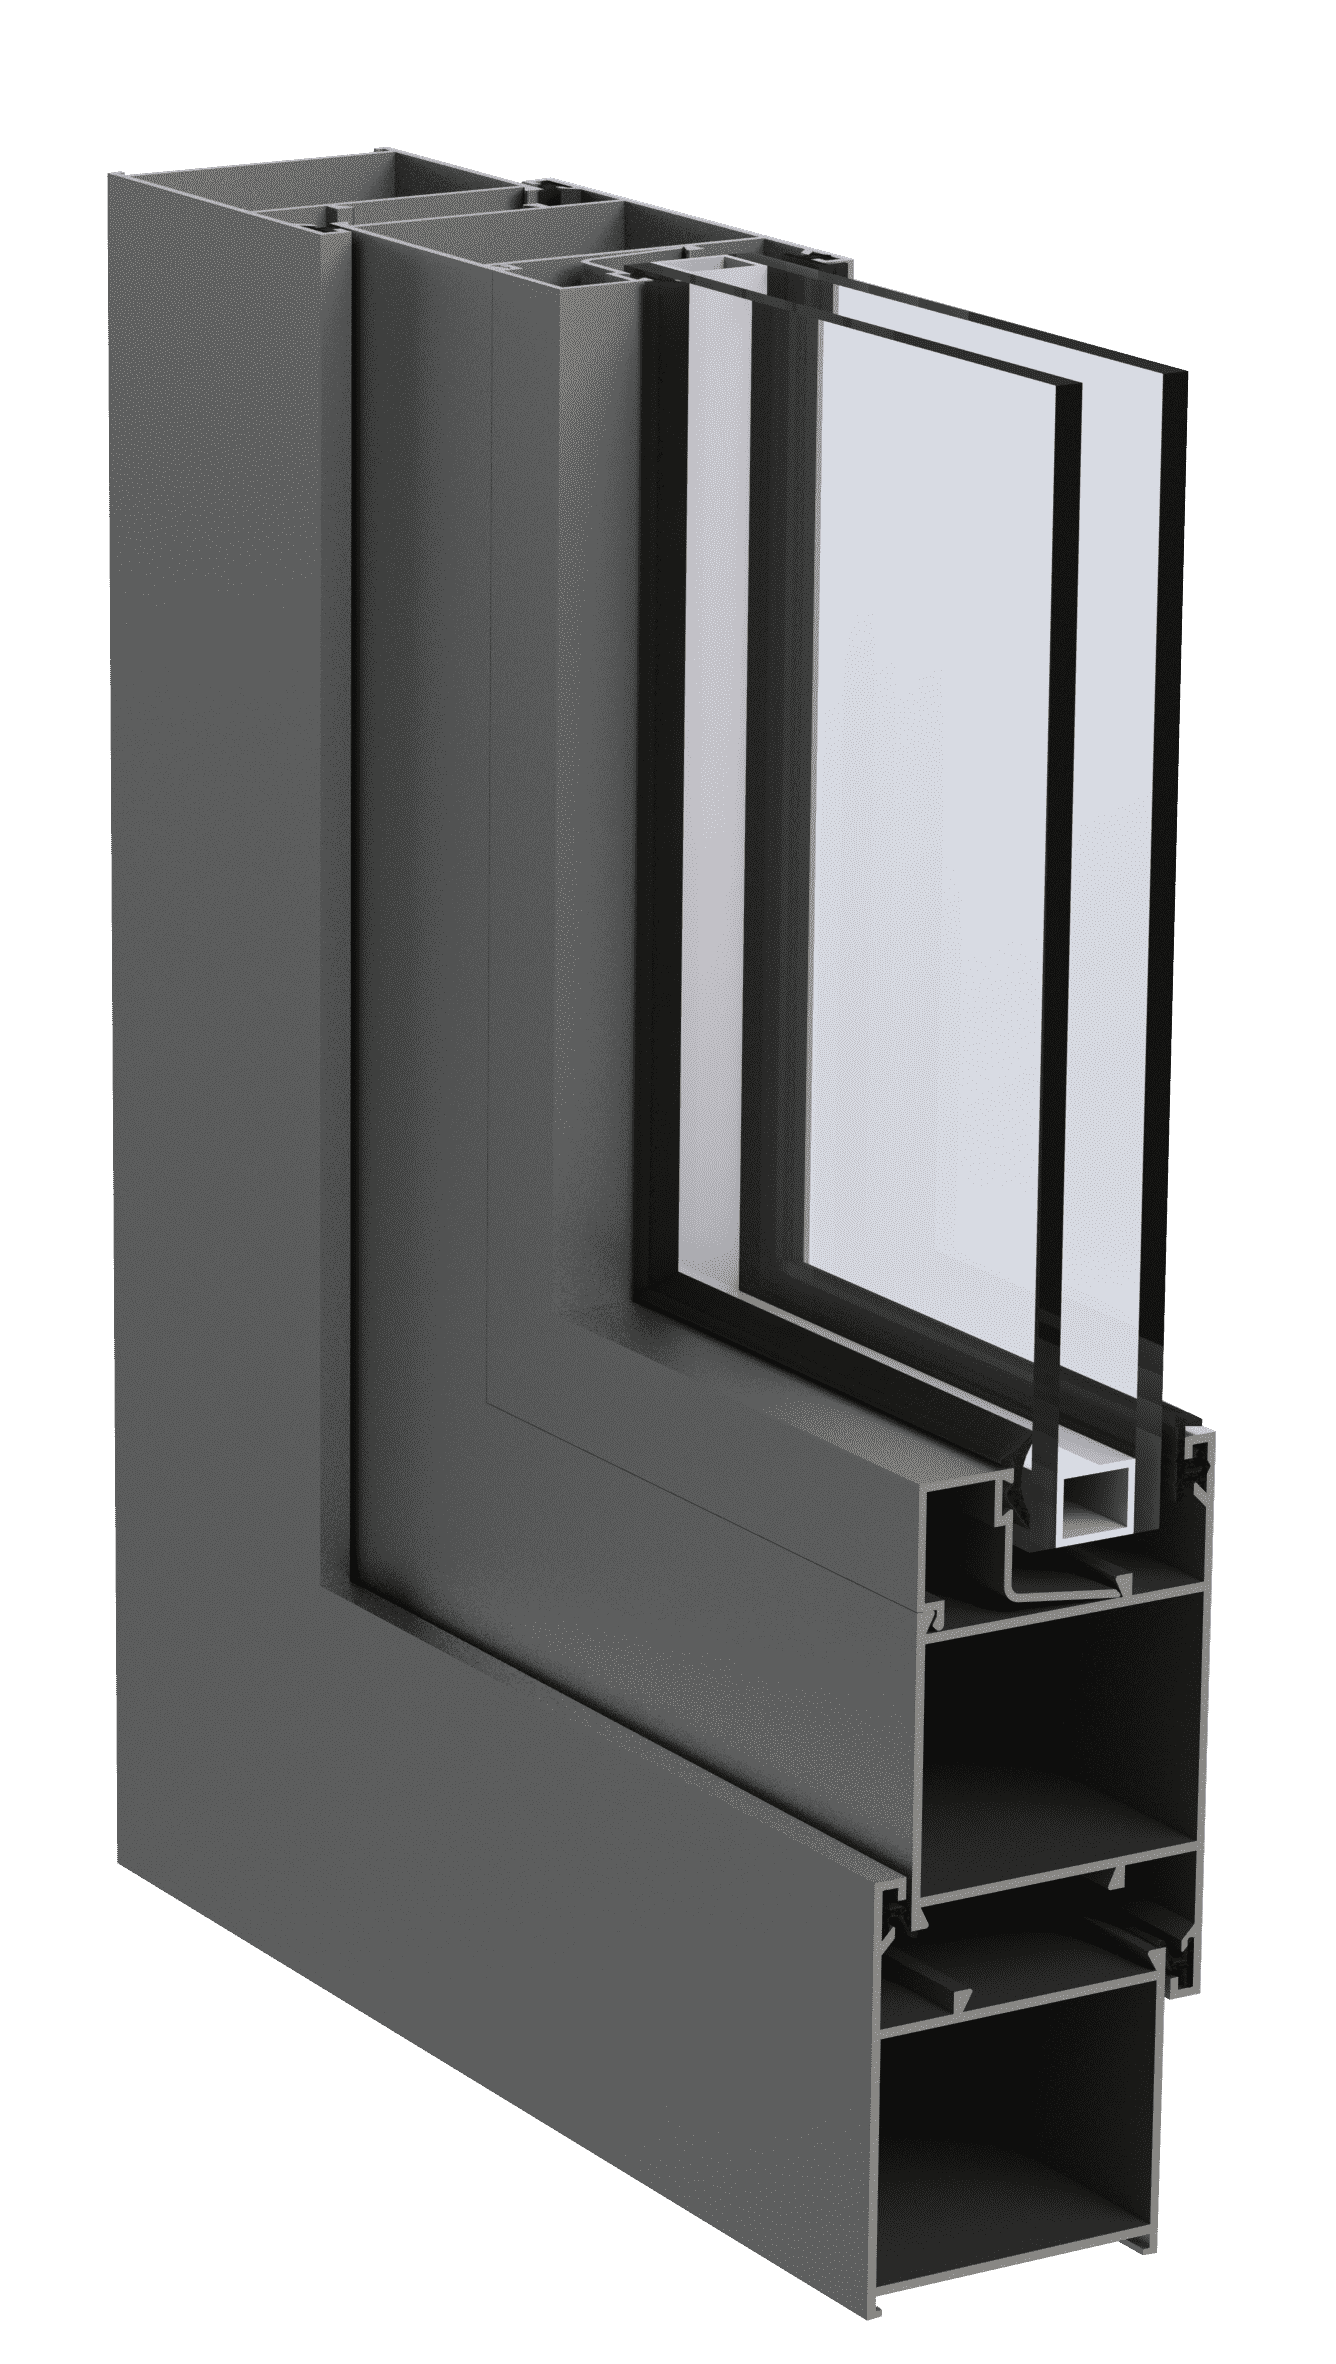 Холодна алюмінієва віконно-дверна система EKIPAZH AluLight C45 для дилерів . Вигідні умови для партнерства